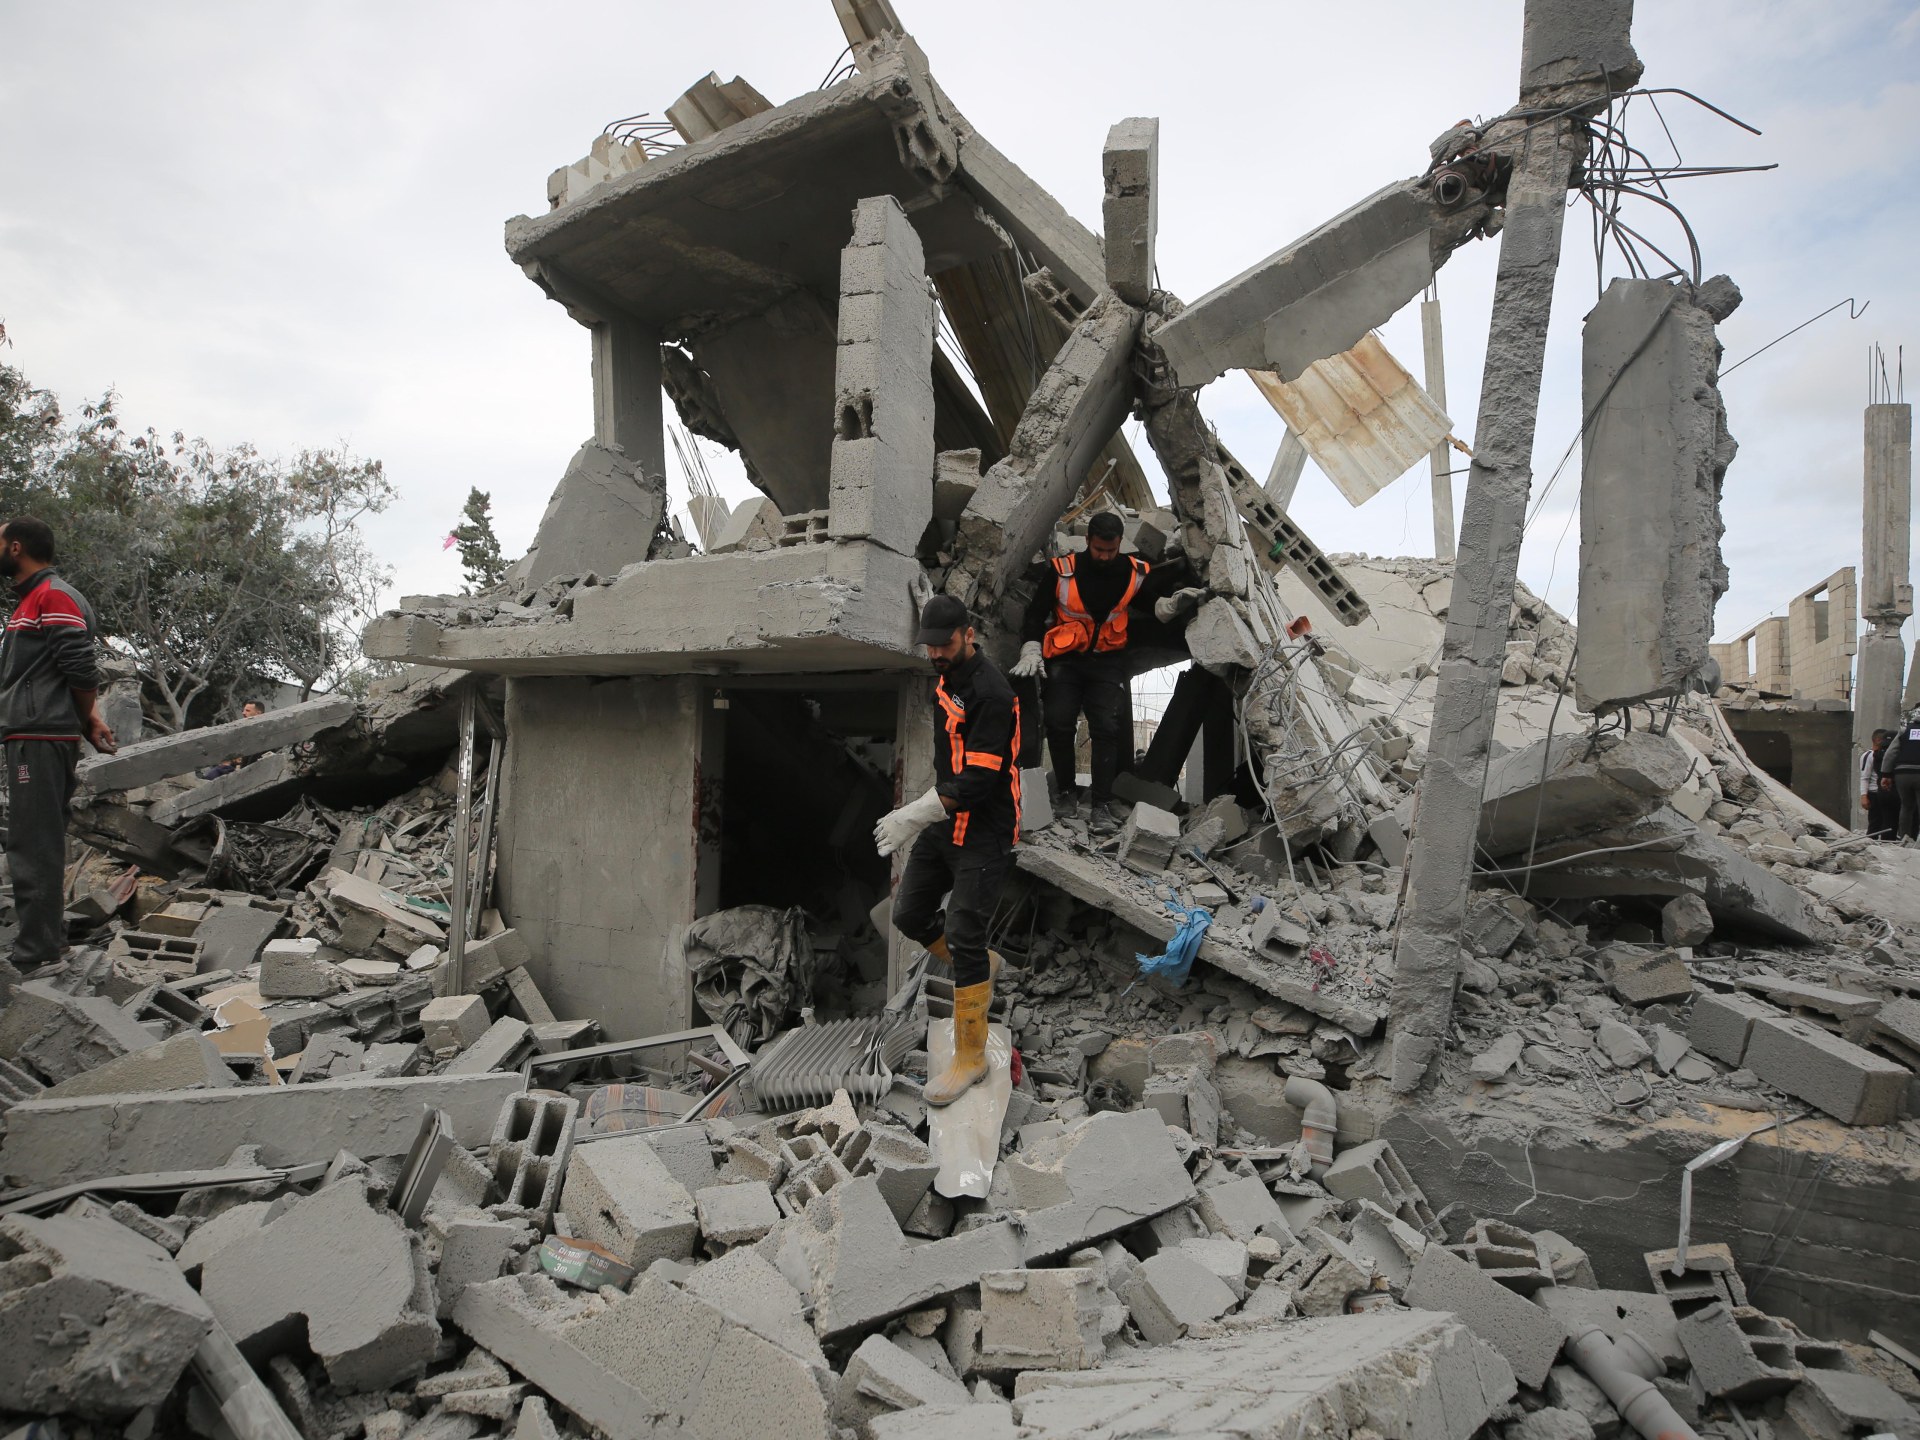 واشنطن تراجع تقريرا عن استخدام إسرائيل للذكاء الاصطناعي في قصف غزة | أخبار – البوكس نيوز